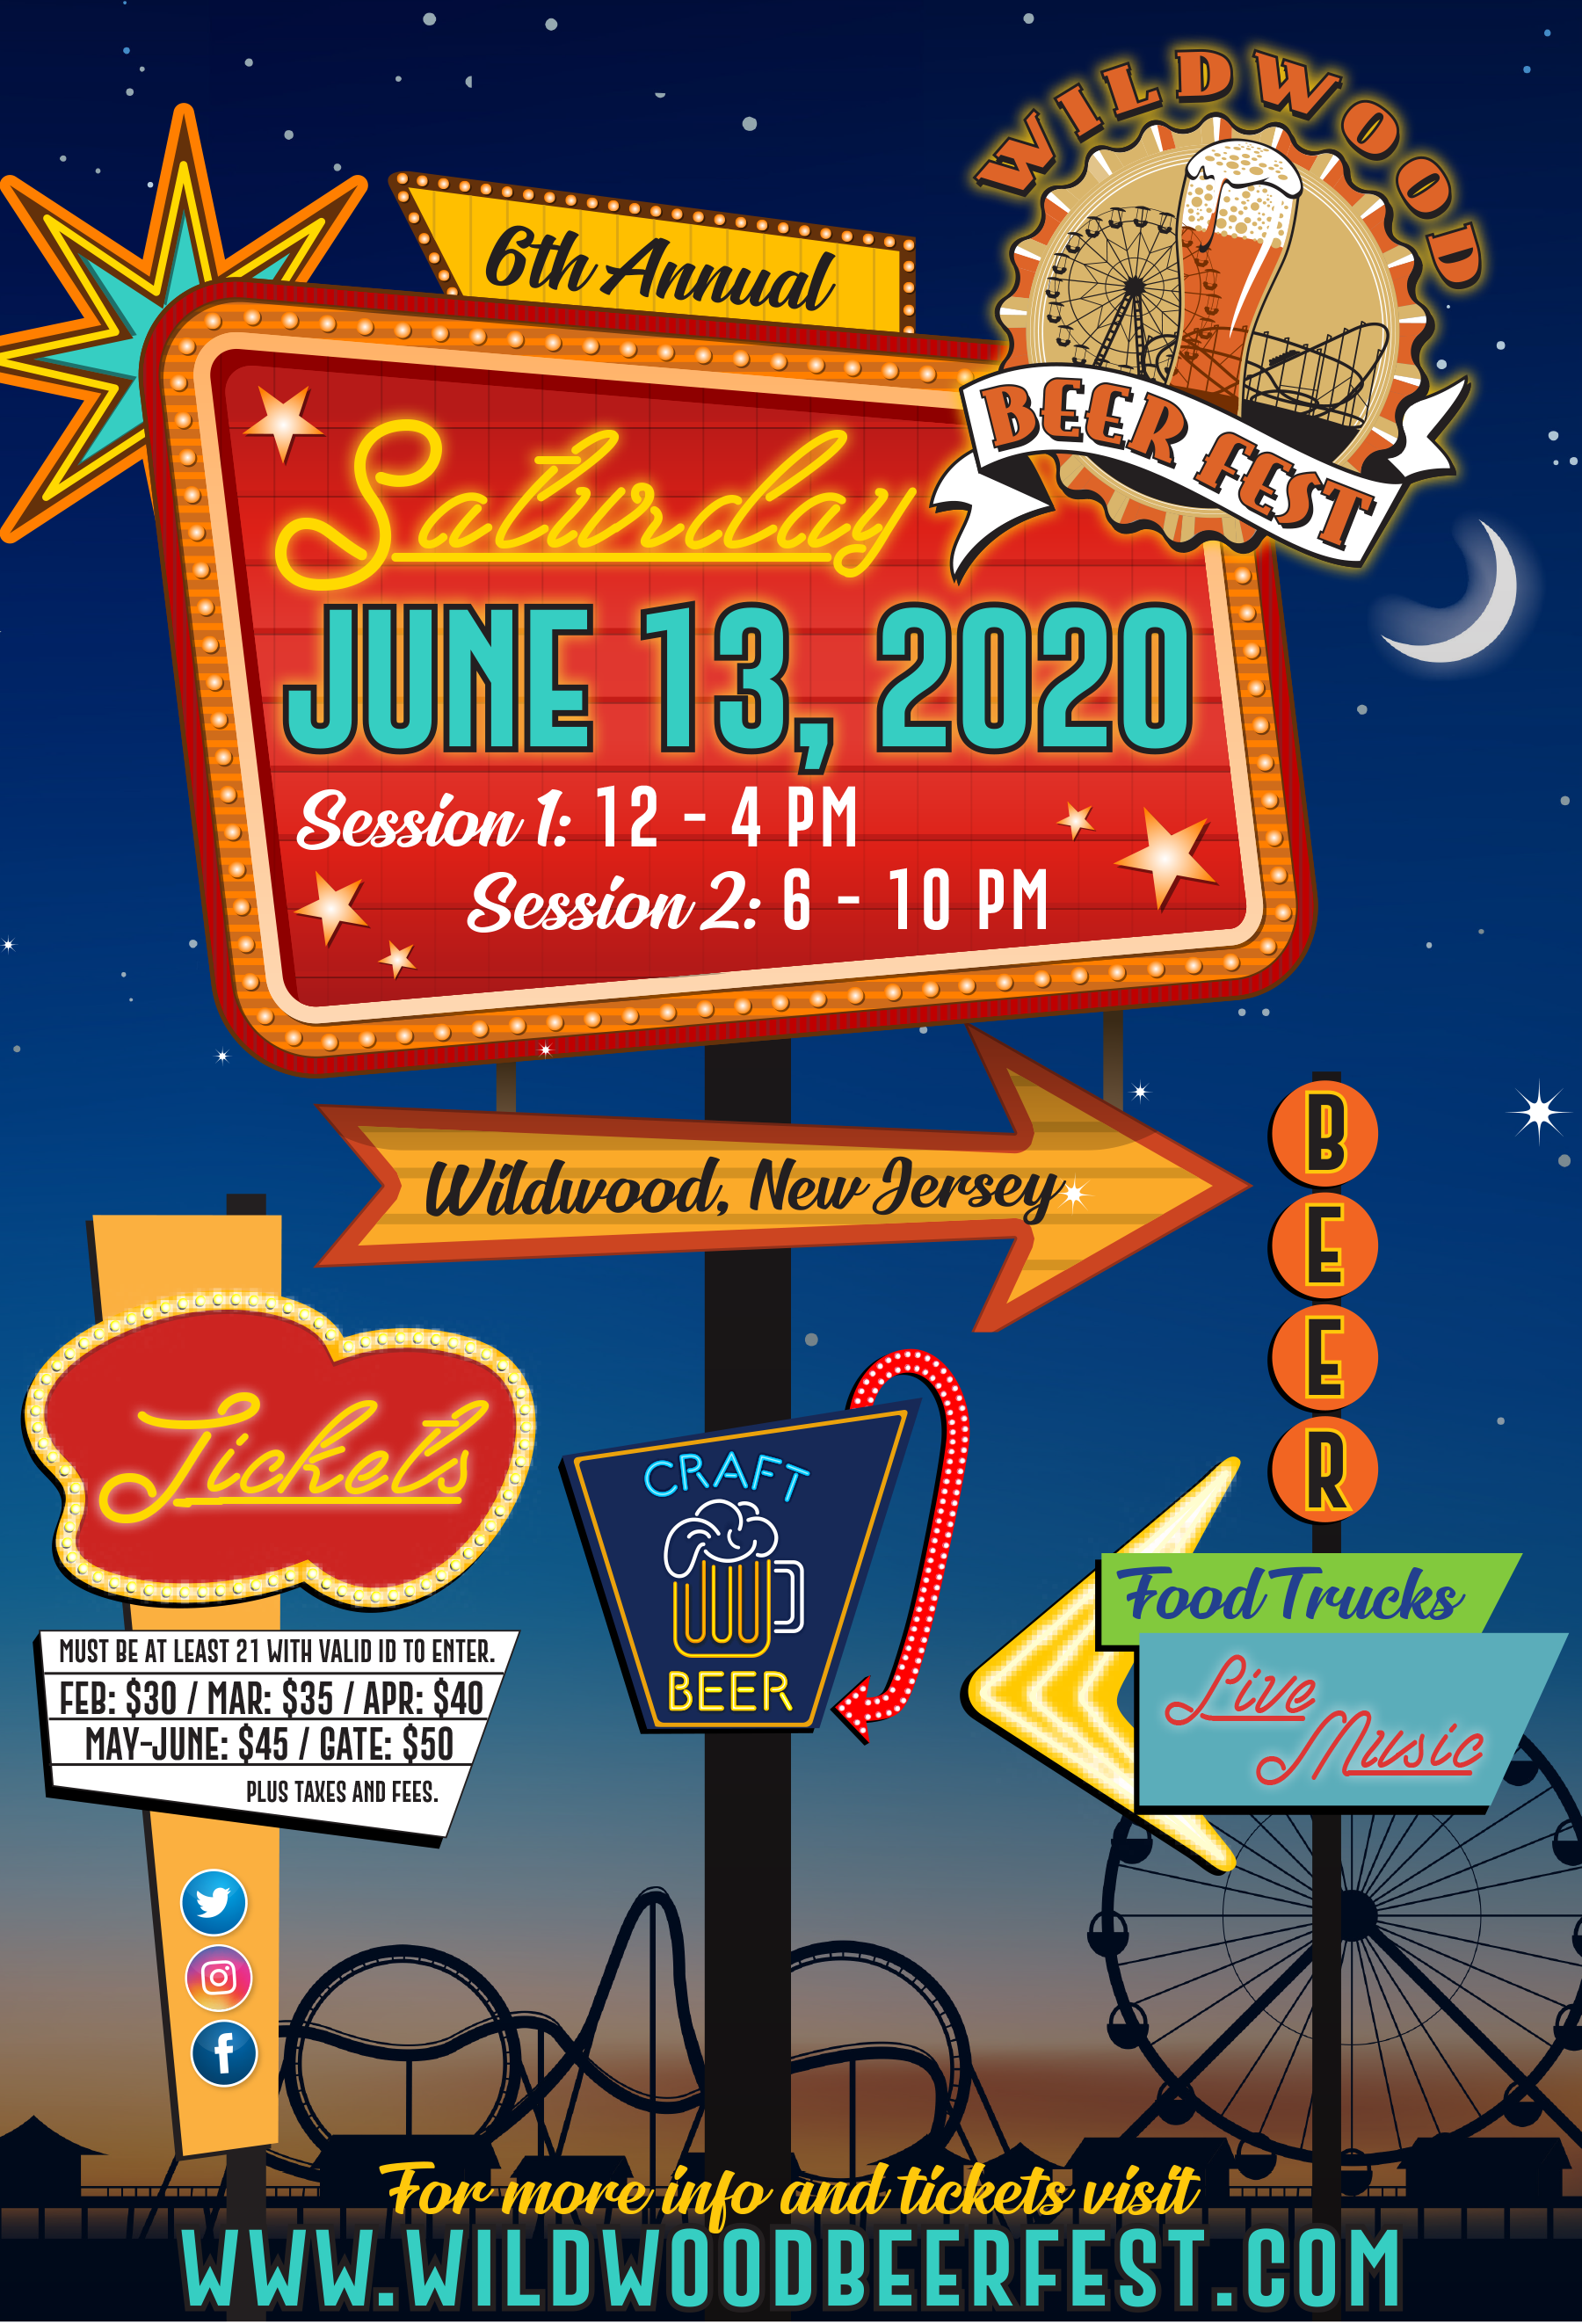 Wildwood Beer Fest banner image